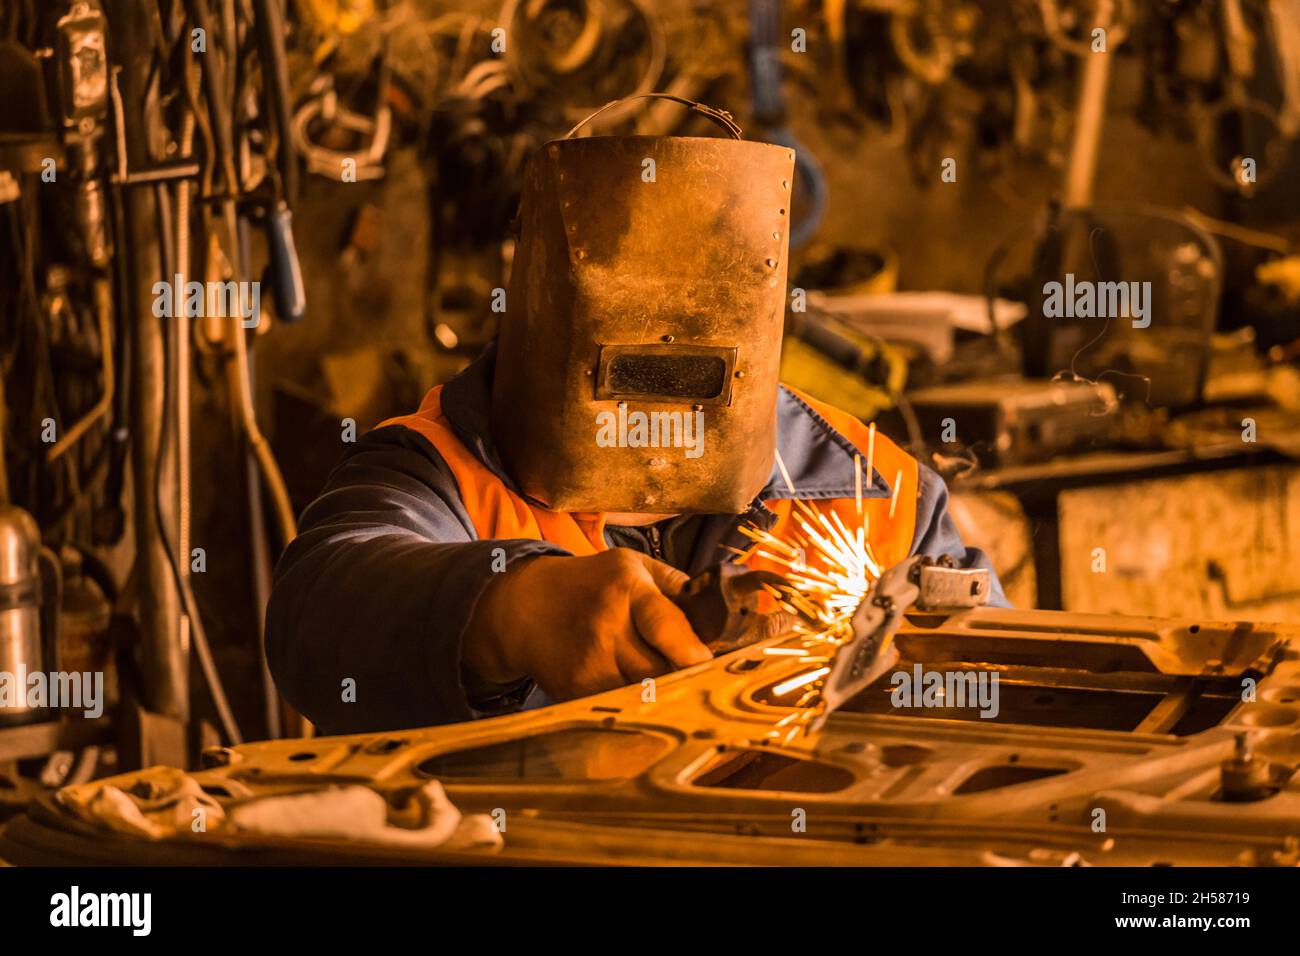 El trabajador de la soldadora en una máscara protectora de hierro repara la  puerta del coche y se dedica a trabajos de soldadura en el taller de la  planta industrial Fotografía de